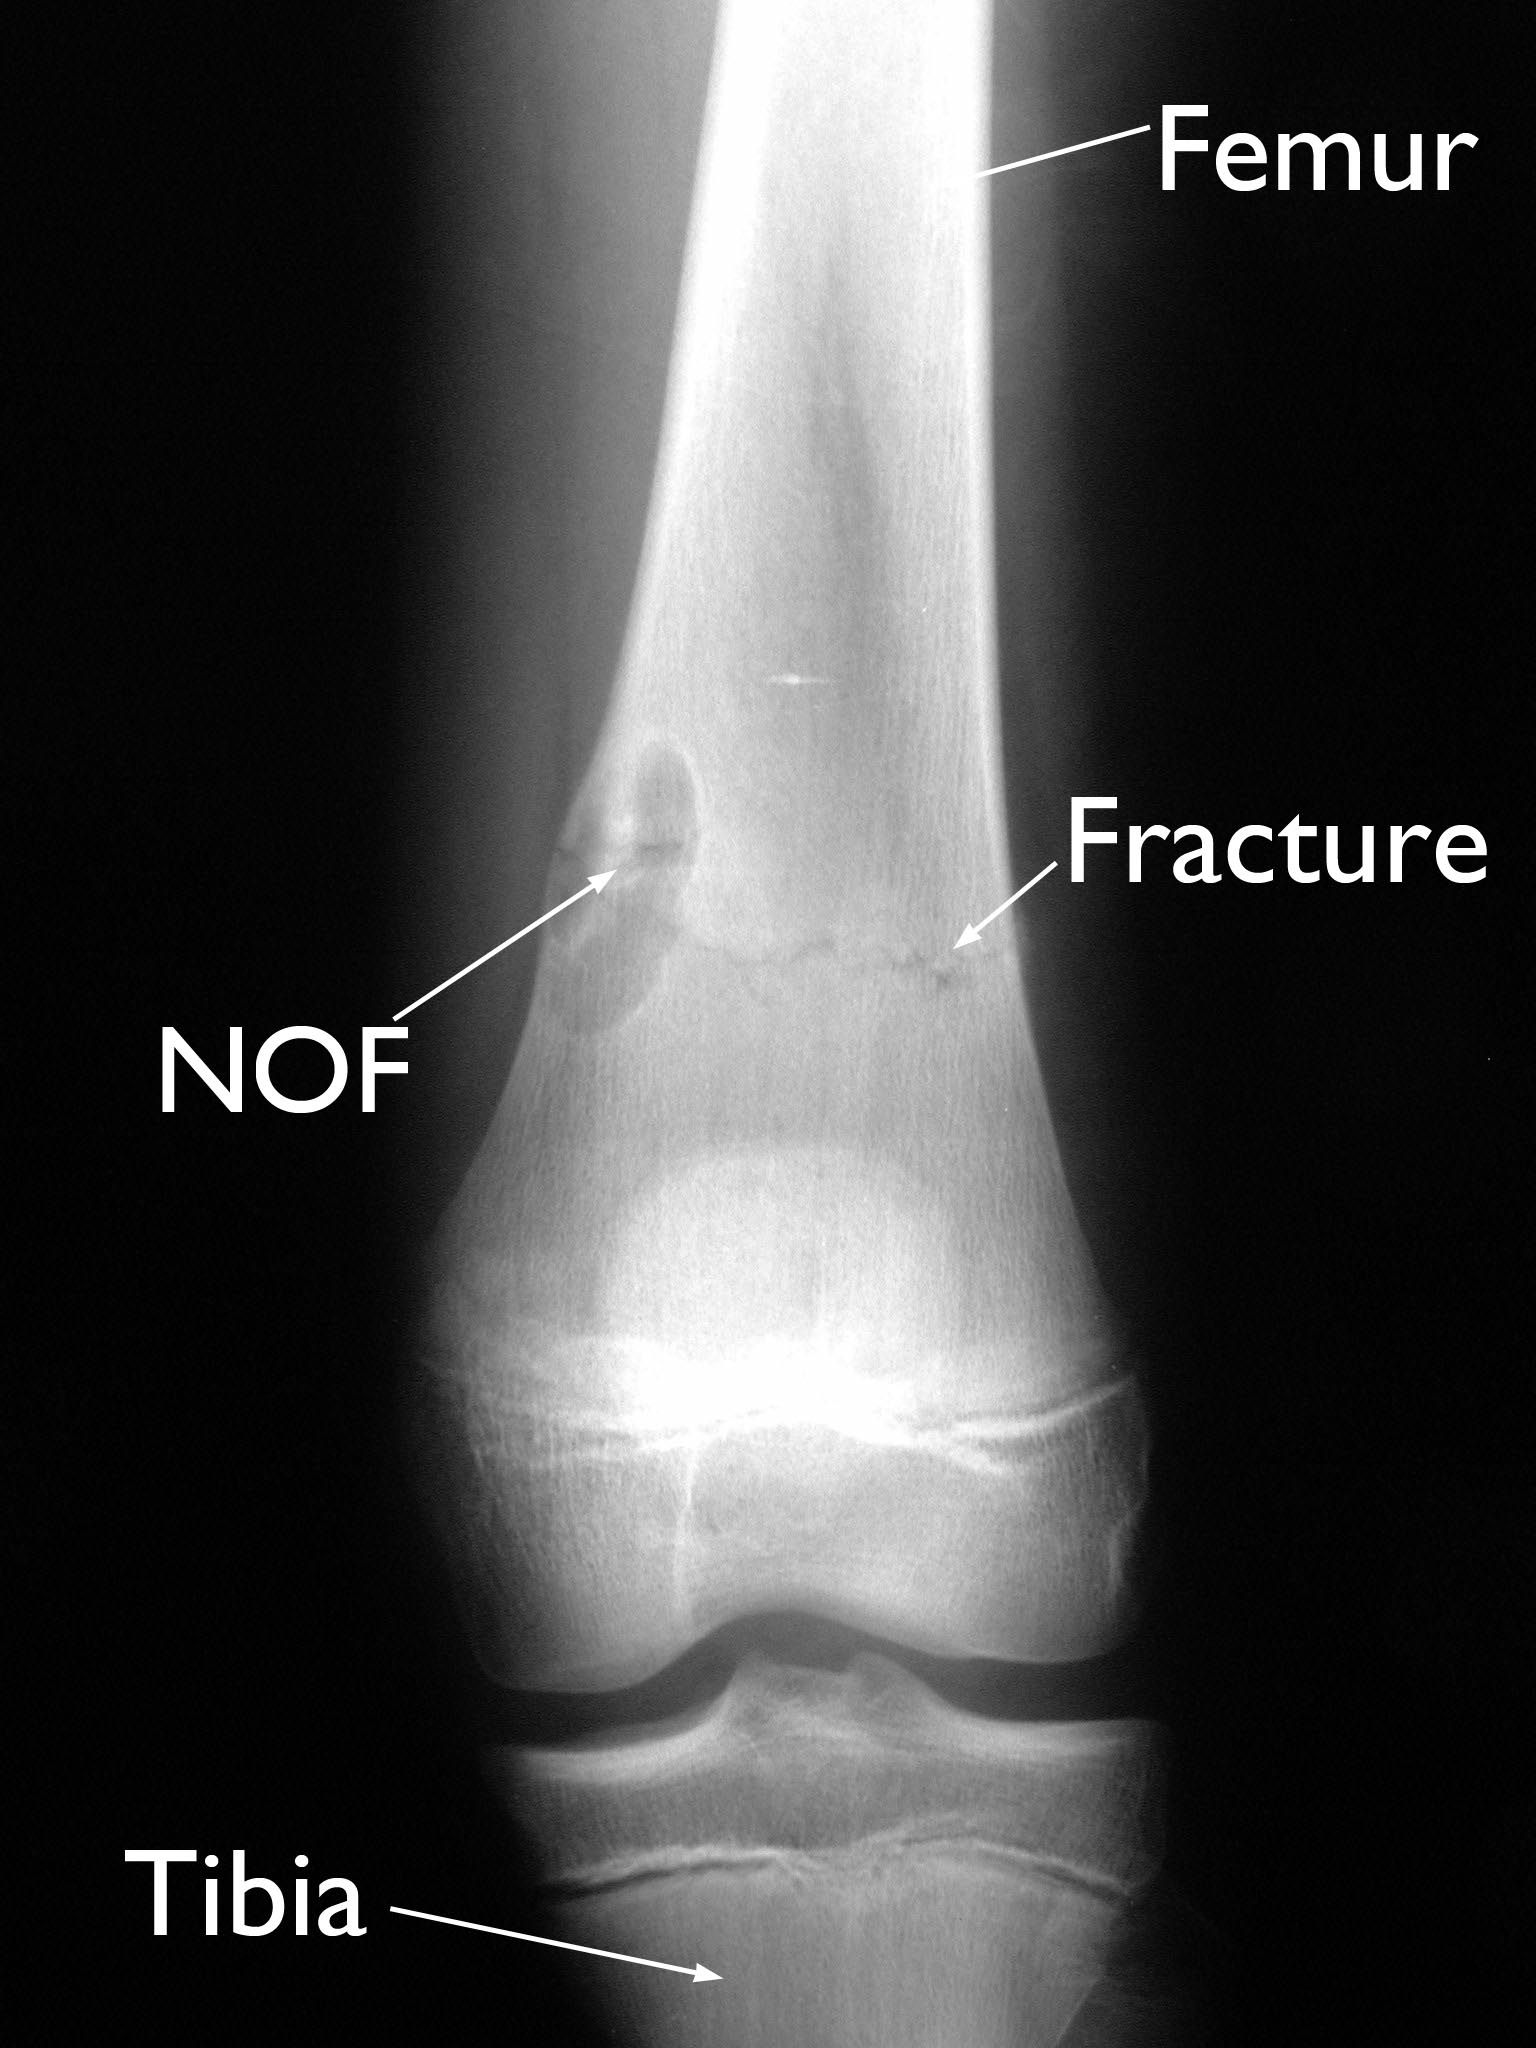 NOF and pathologic fracture in femur